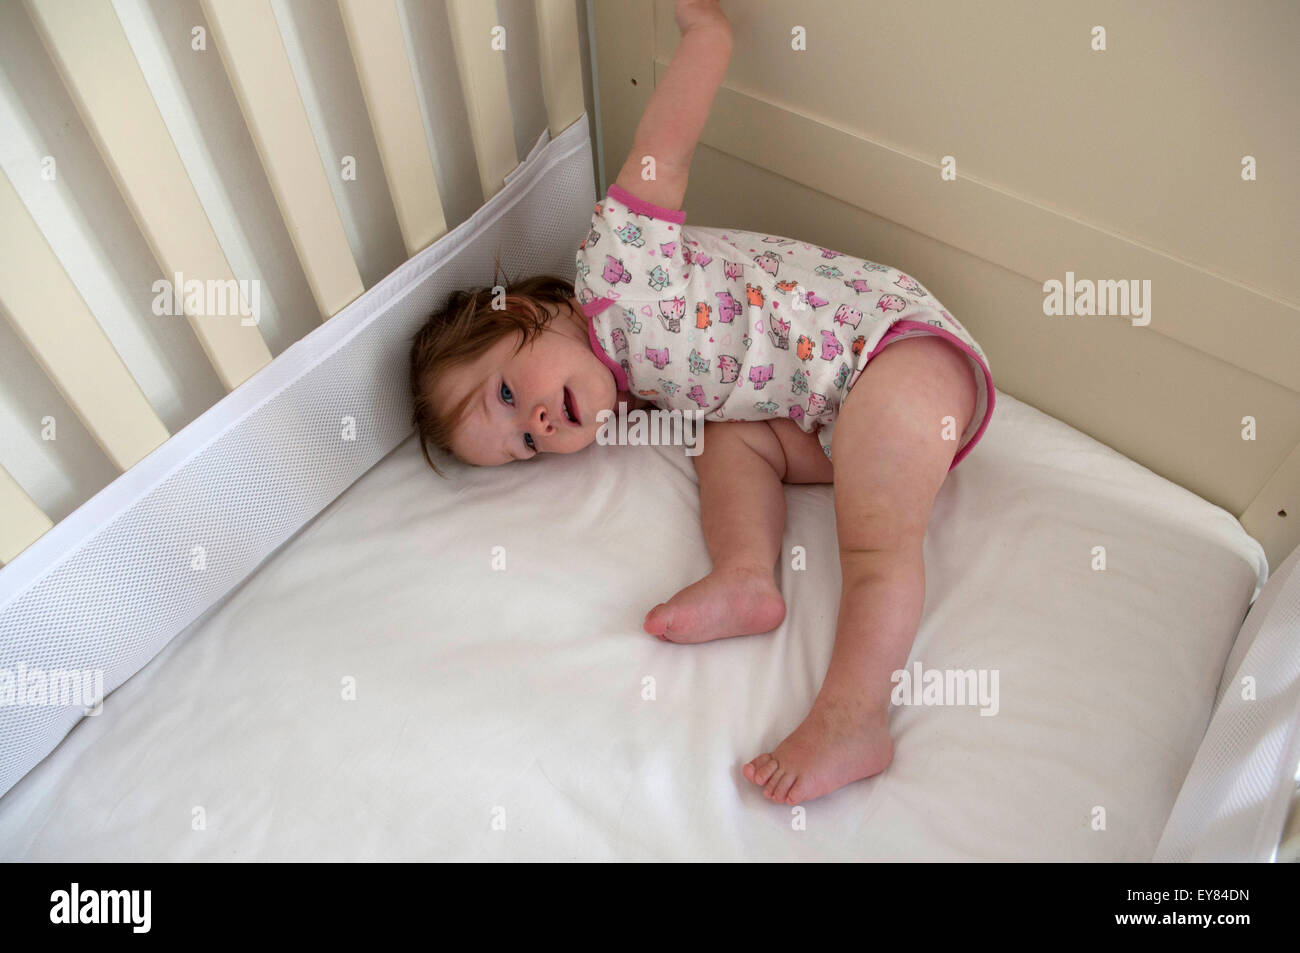 Fotografía cenital de niña bebé acostado en su cuna Foto de stock